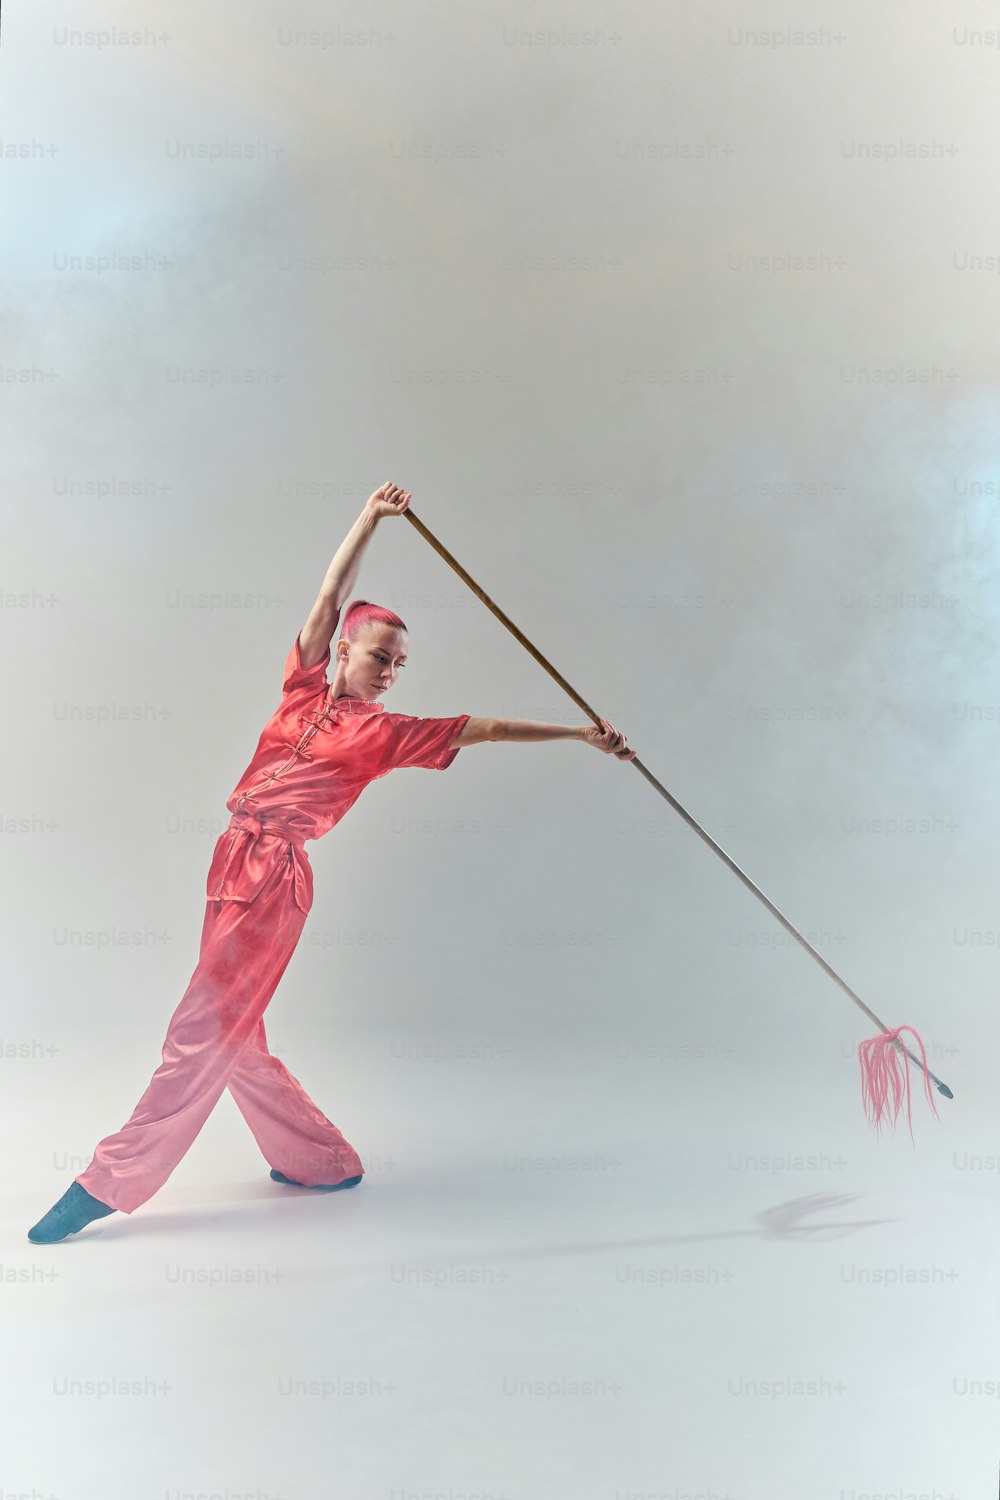 Un uomo vestito di rosso tiene in mano un palo